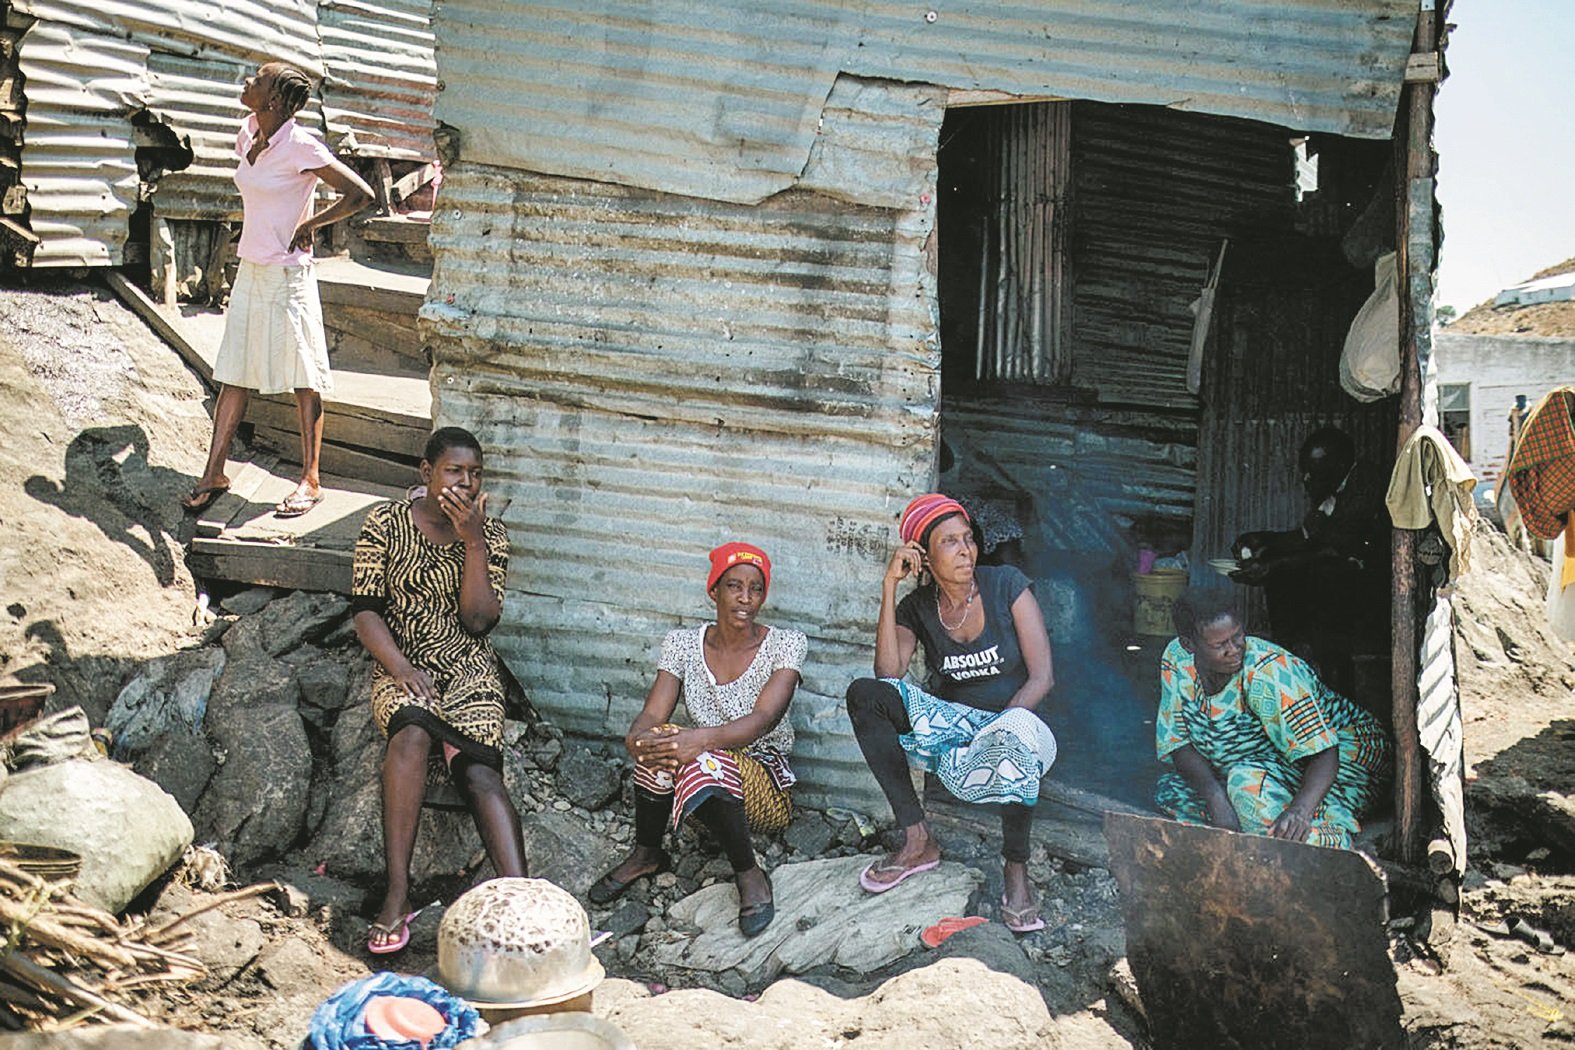 米金戈岛在最早期只有2人定居，2004年大批来自肯尼亚、乌干达和坦桑尼亚的渔民来到岛上。目前, 由肯尼亚24名士兵和乌干达12名士兵共同驻守。这是米金戈岛上的妇女们，坐在屋外乘凉。